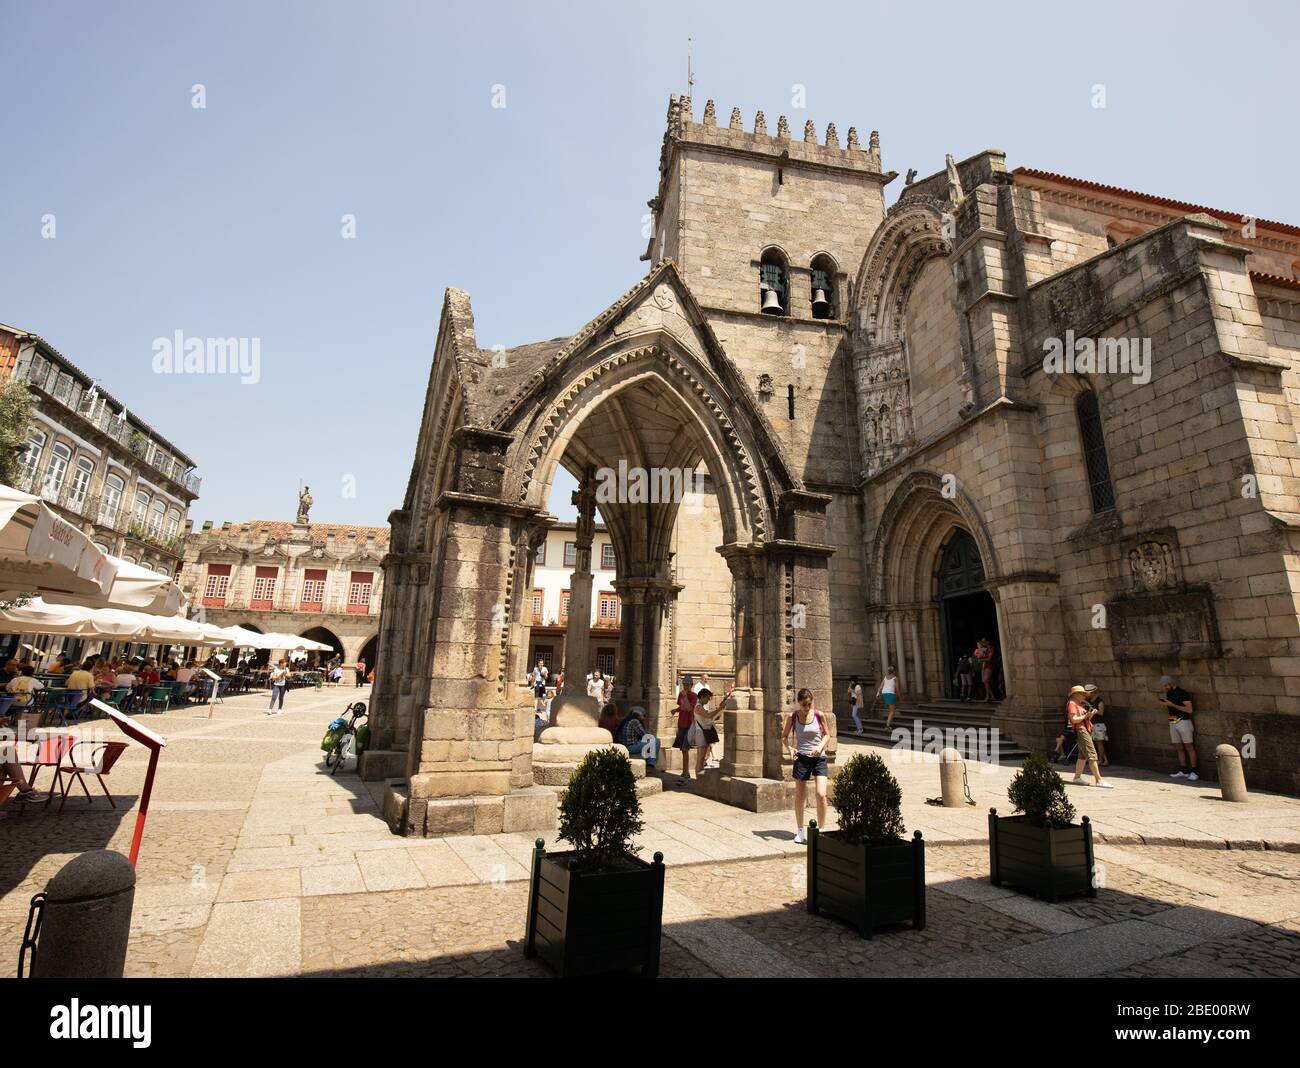 Padrao do Salado y largo da Oliveira el santuario gótico, Guimaraes Portugal Foto de stock